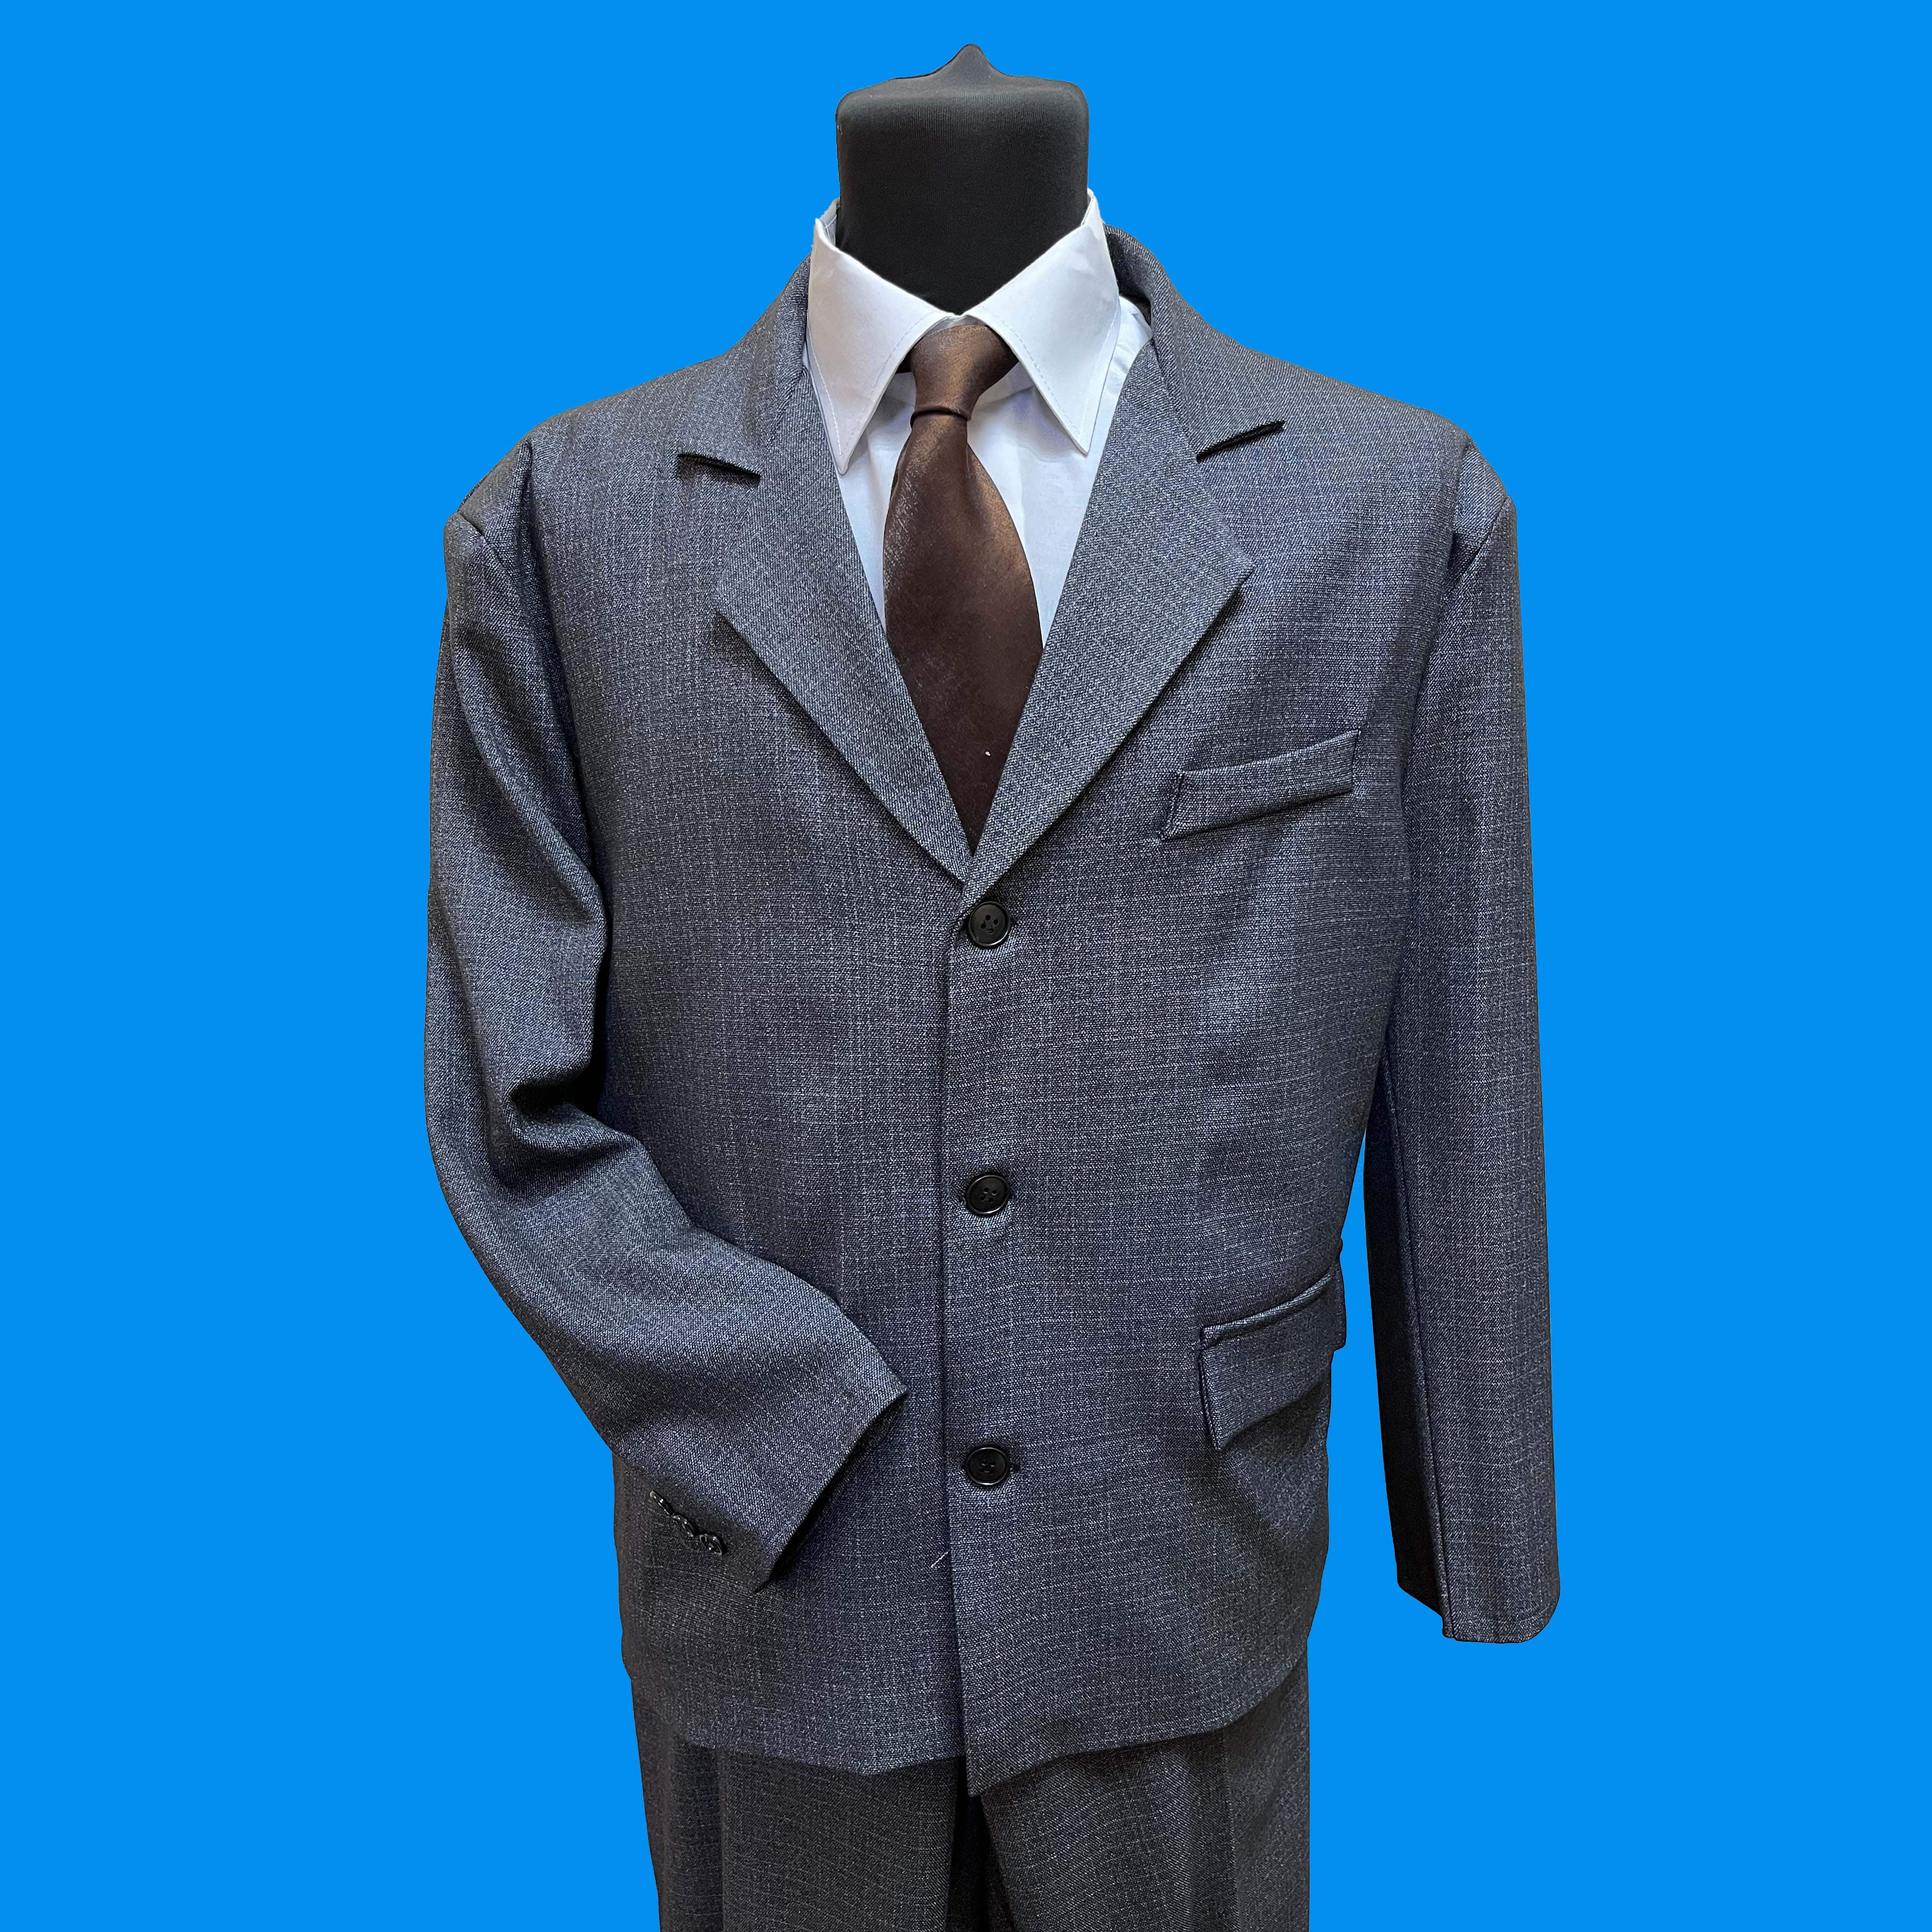 1977 Комплект мужской "Архангельский трехпредметный" из костюмной ткани с подкладкой